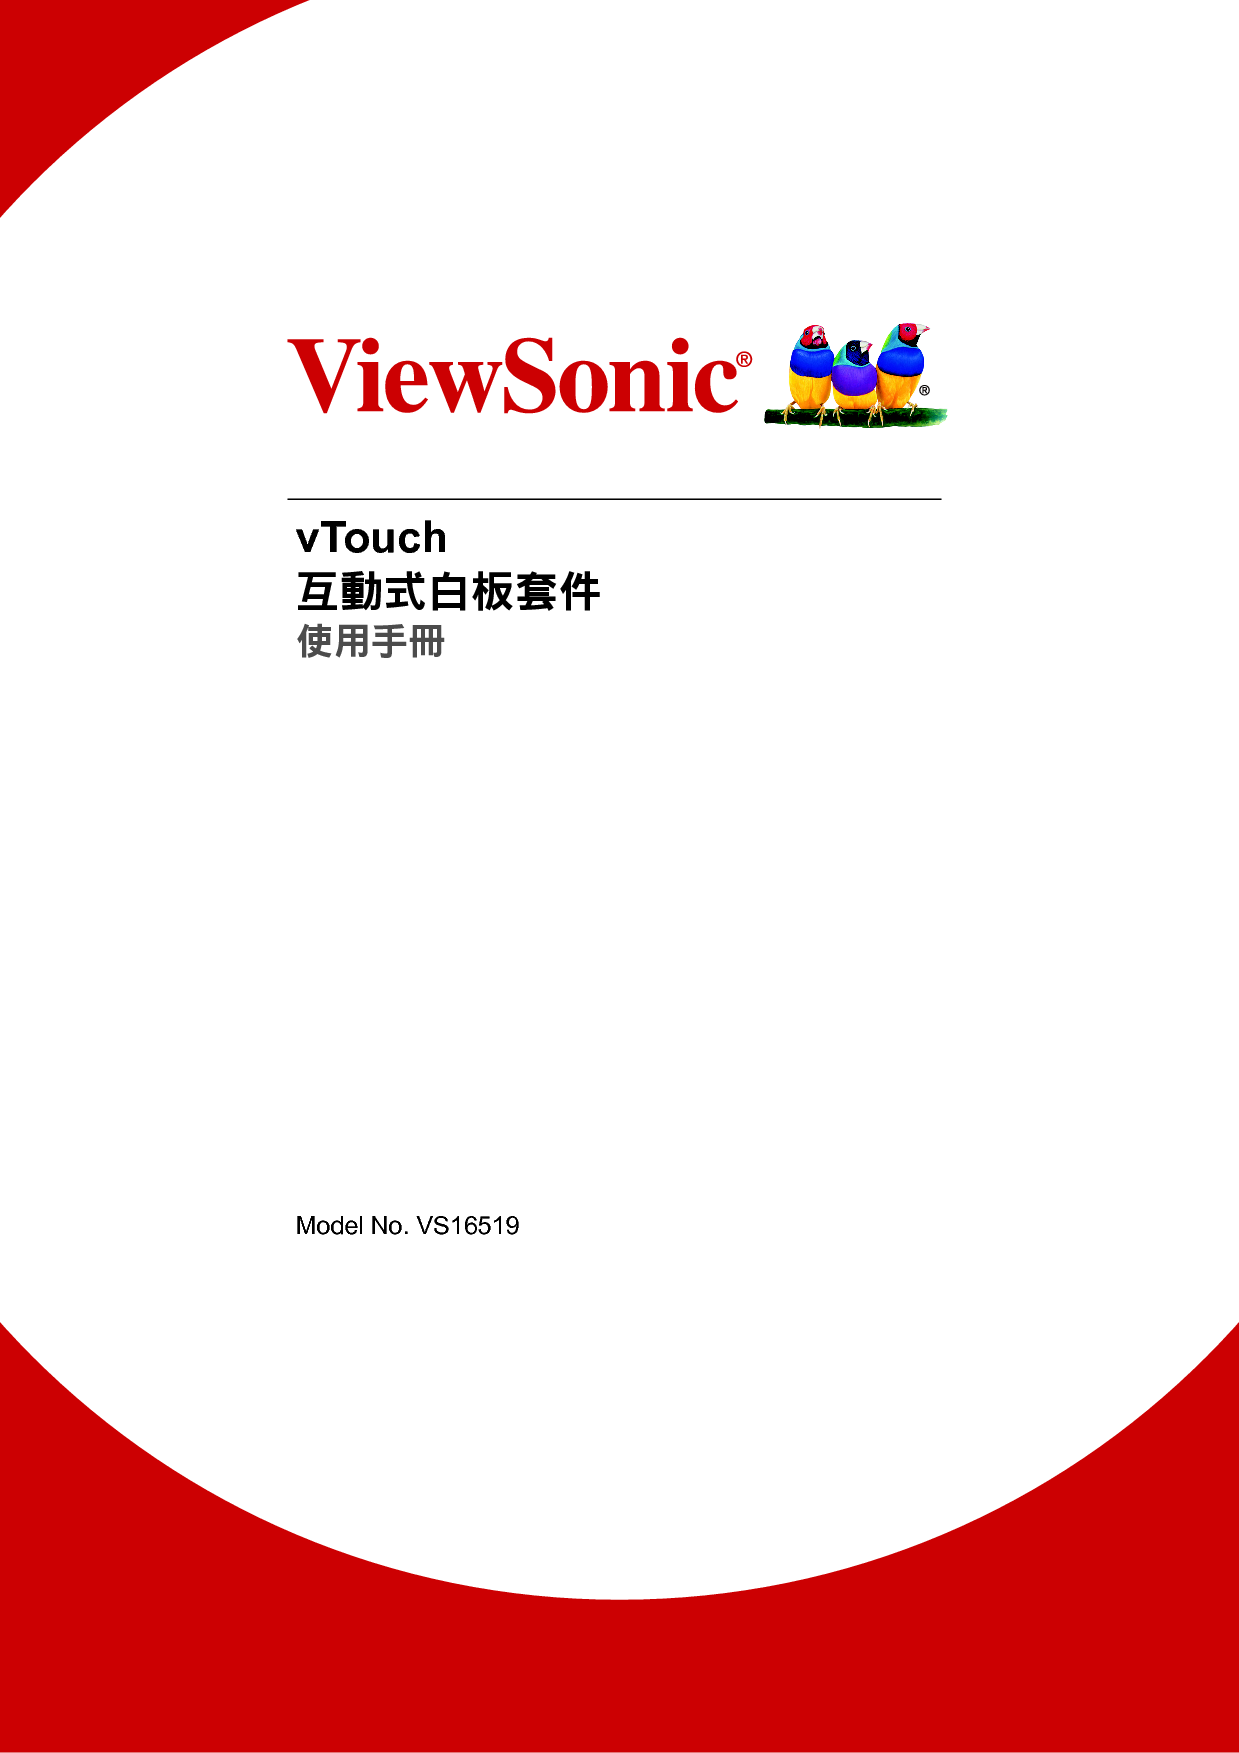 优派 ViewSonic vTouch 繁体 使用手册 封面